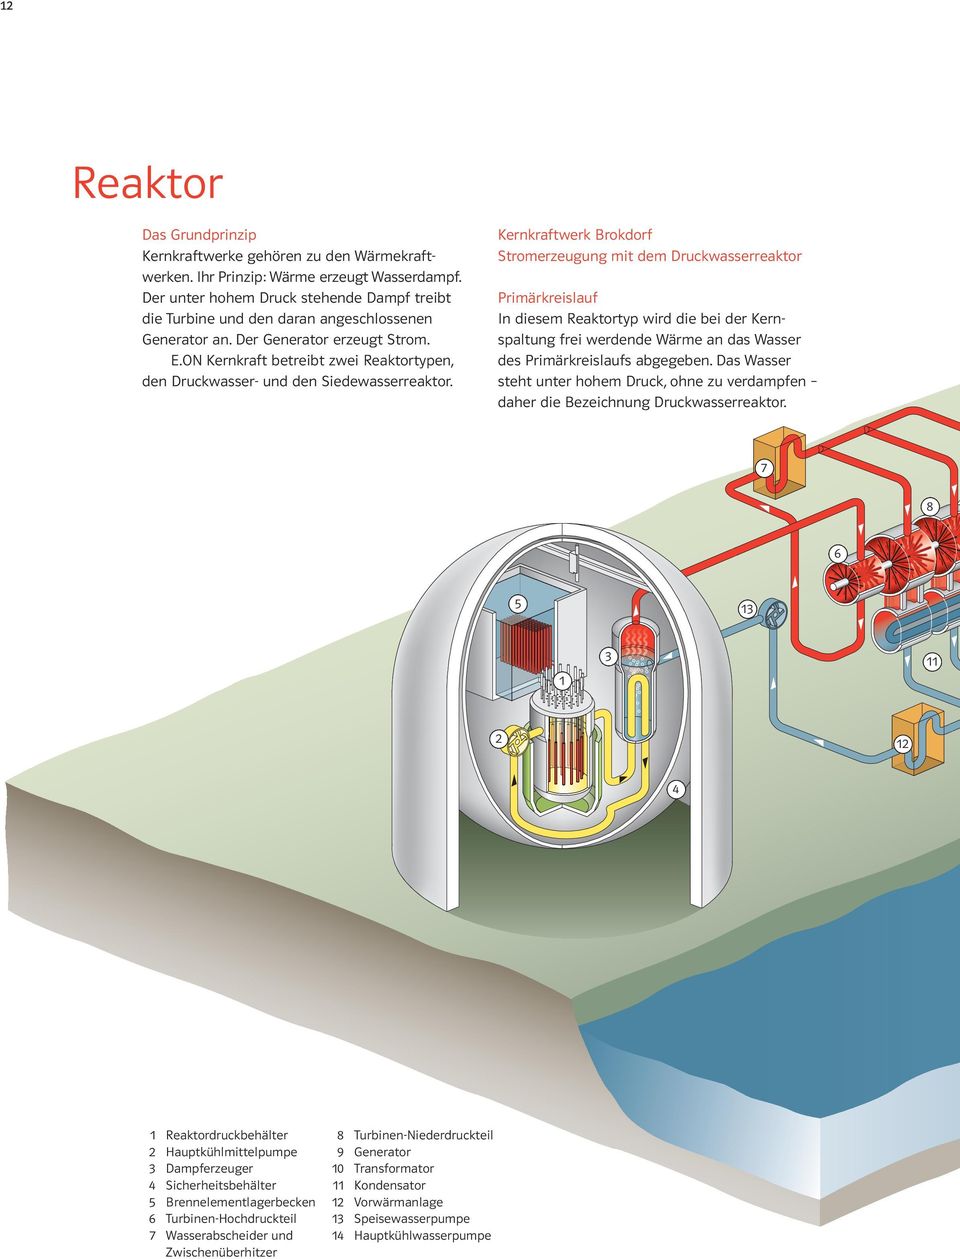 ON Kernkraft betreibt zwei Reaktortypen, den Druckwasser- und den Siedewasserreaktor.